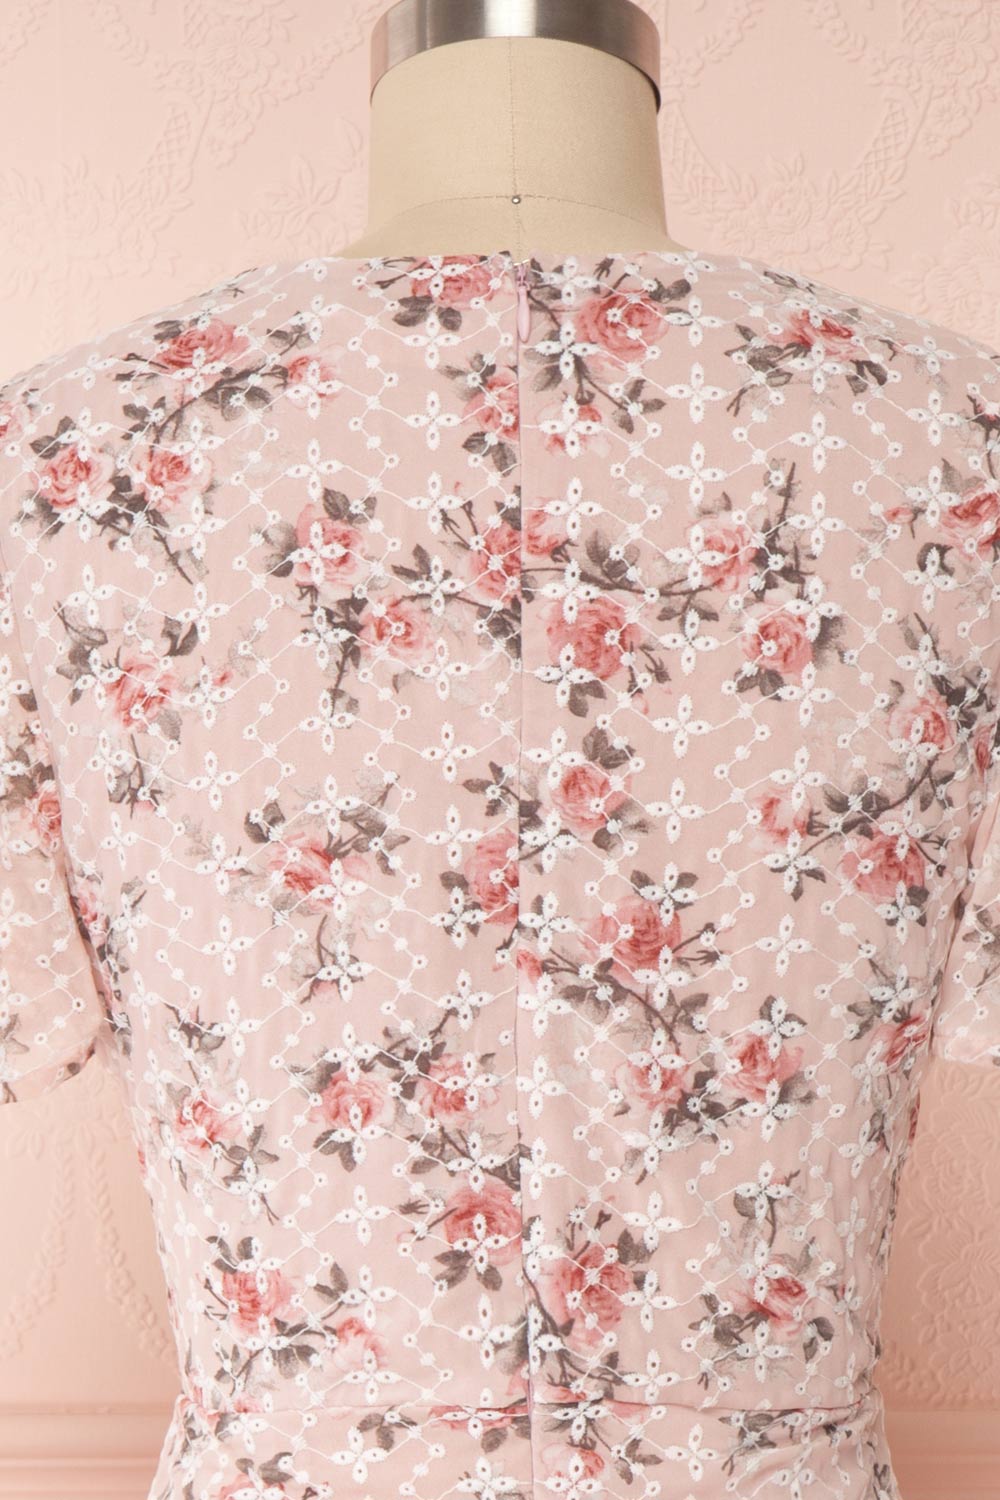 Mardoll Lilac Floral V-Neck Short Dress | Boutique 1861 back close up